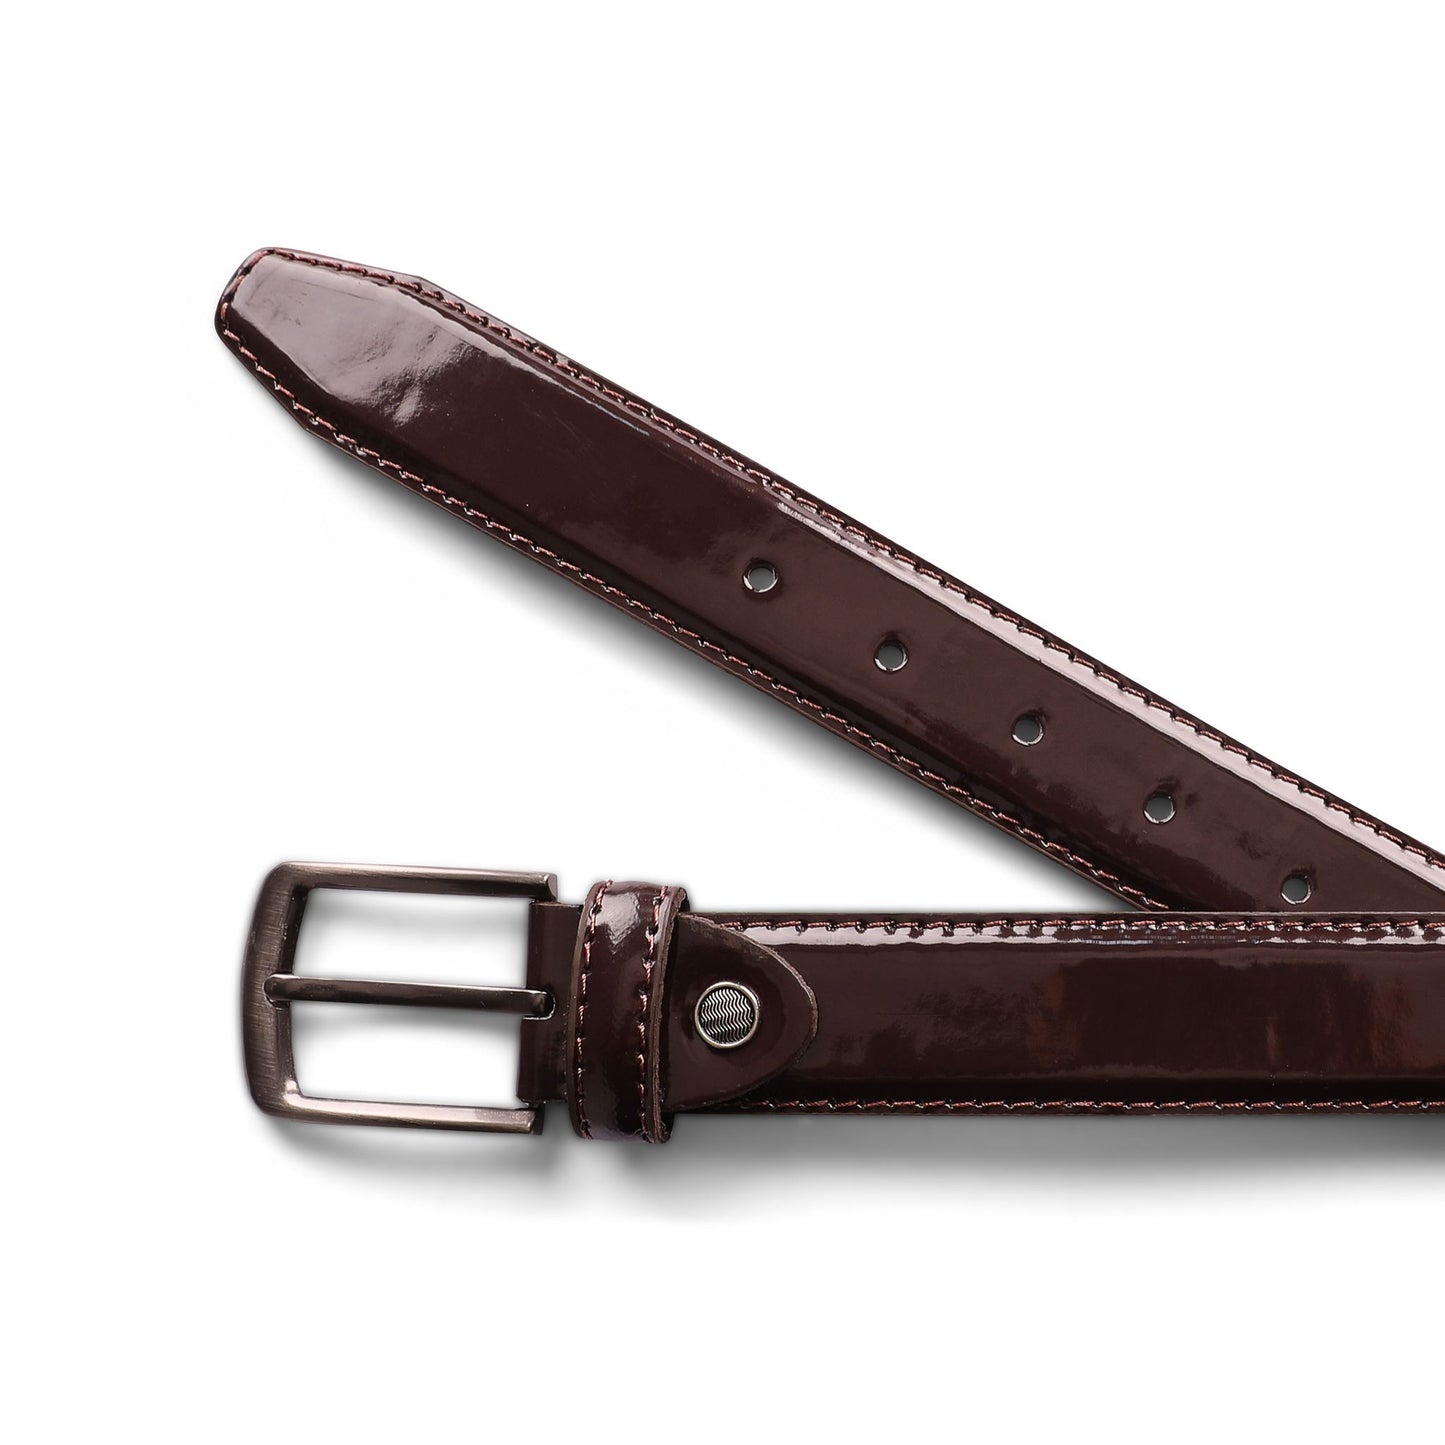 حزام رسمي كلاسيك فورمال فيرنيه لامع من الجلد الطبيعي من تيستا تورو Testa Toro b11